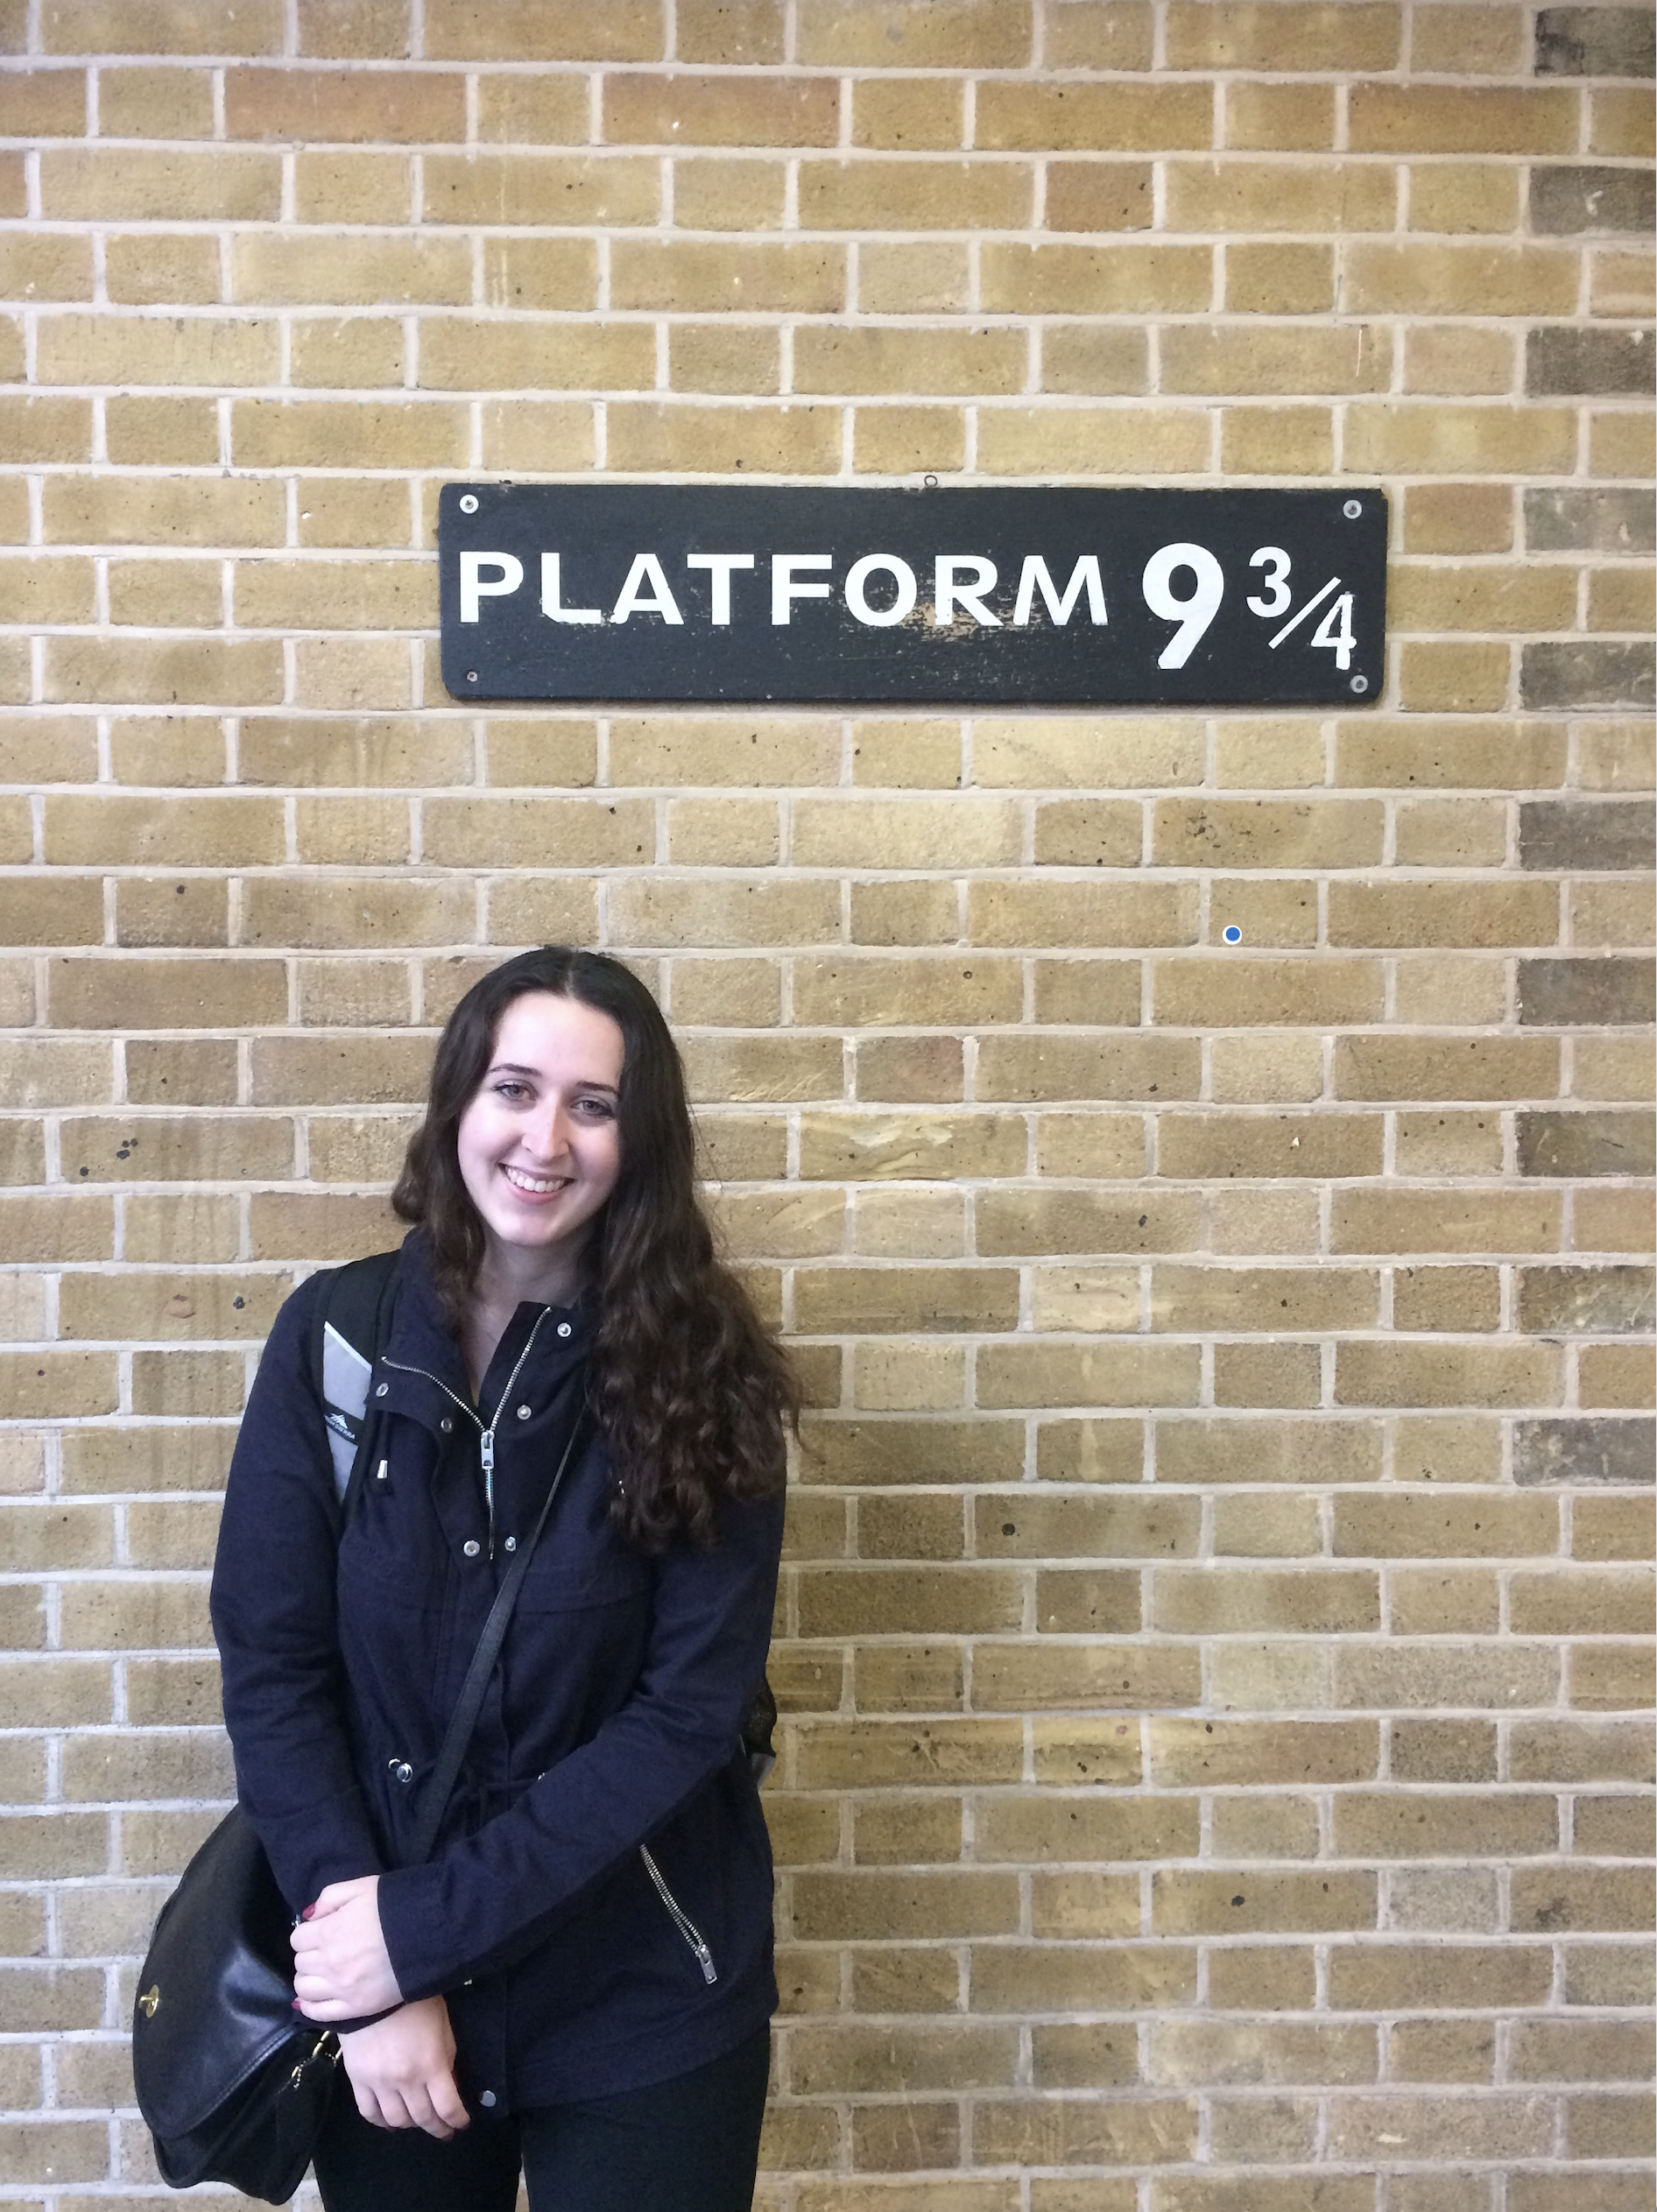 Rachel Carter standing in front of Platform 9 3/4.